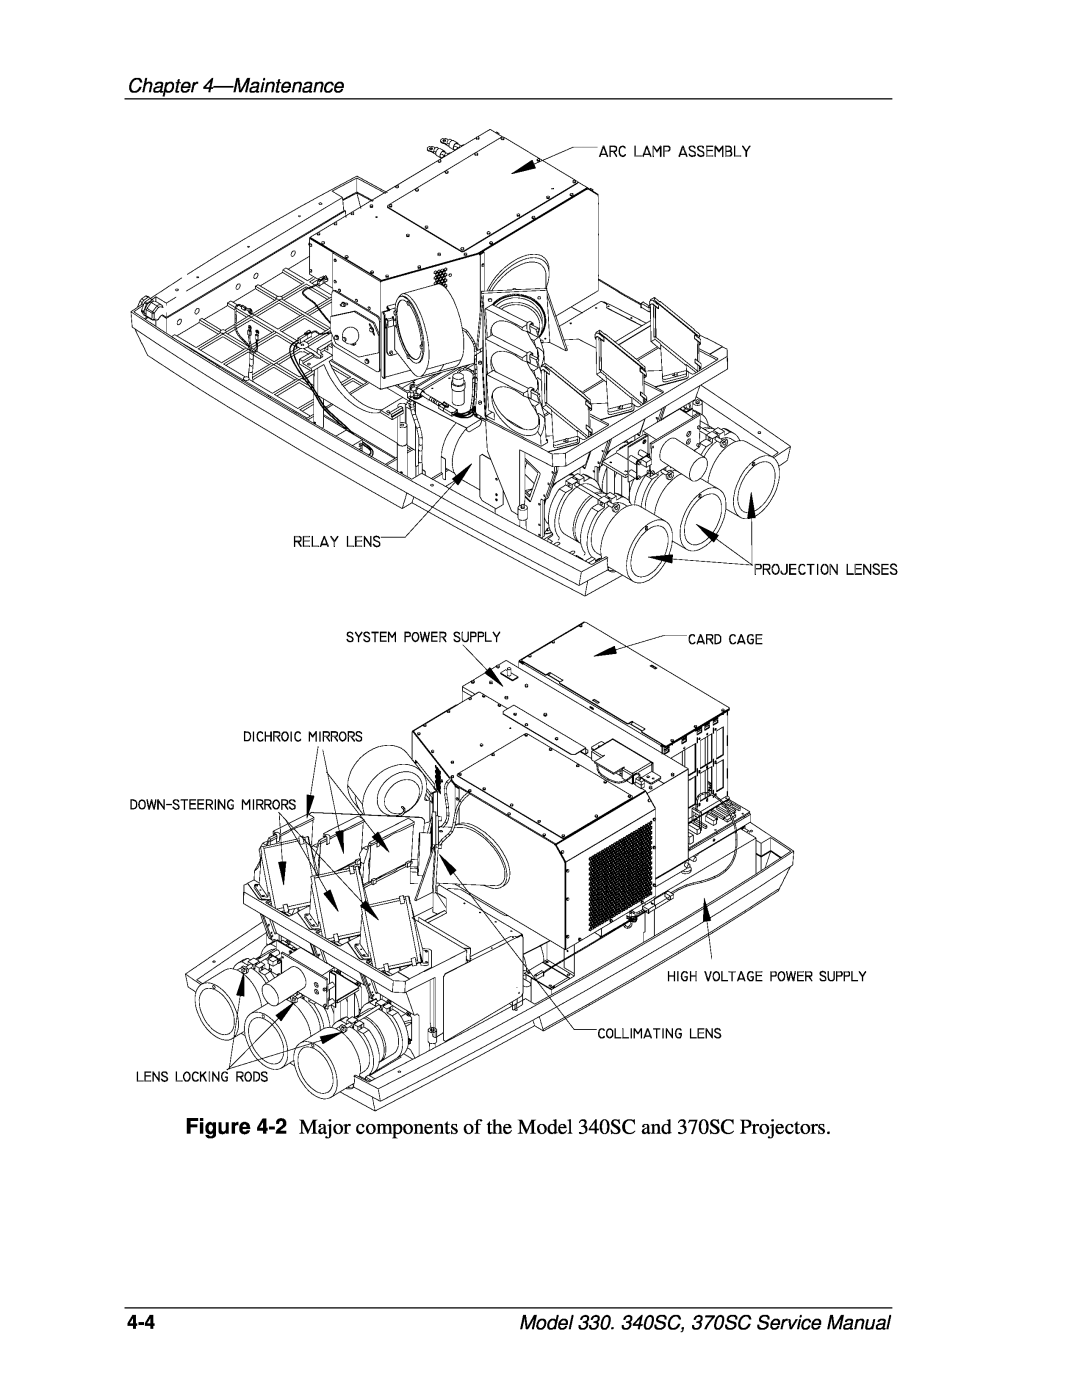 JVC 2 Major components of the Model 340SC and 370SC Projectors, Maintenance, Model 330. 340SC, 370SC Service Manual 